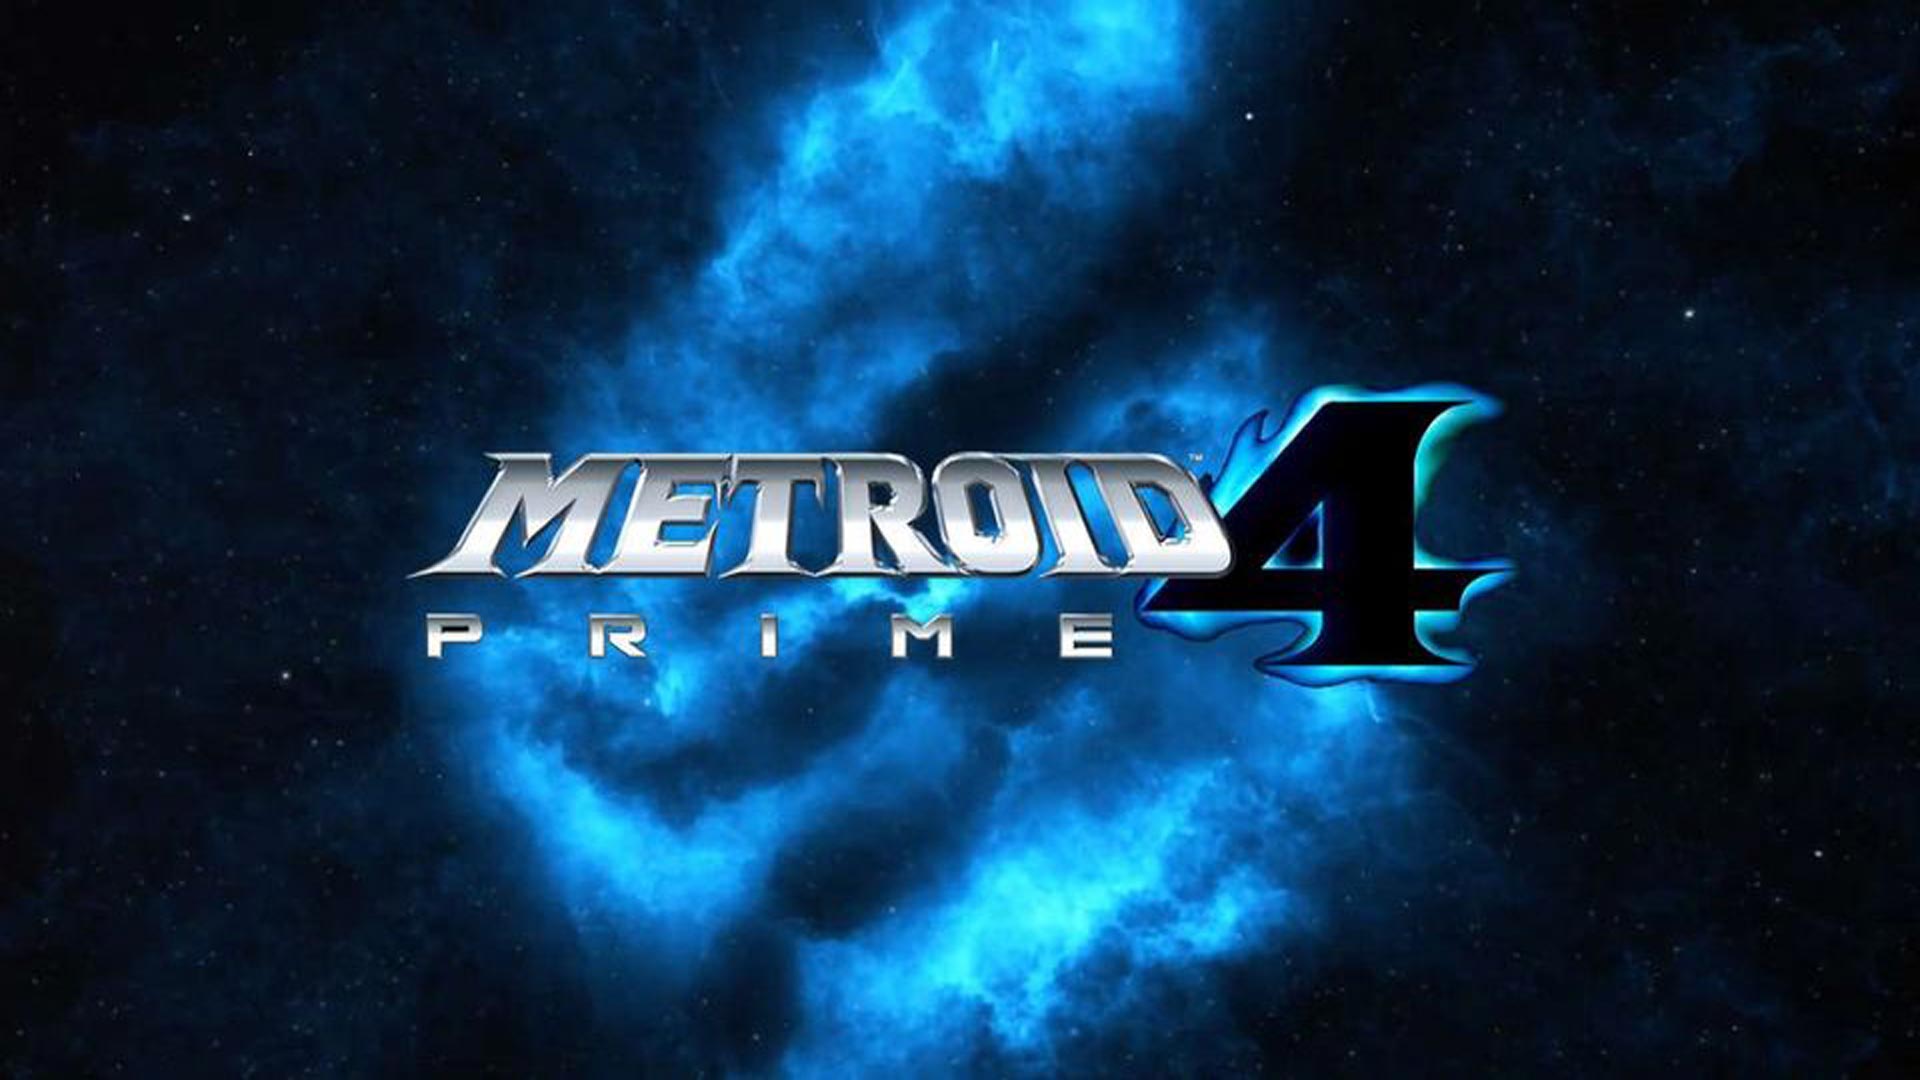 روند توسعه بازی Metroid Prime 4 همچنان ادامه دارد